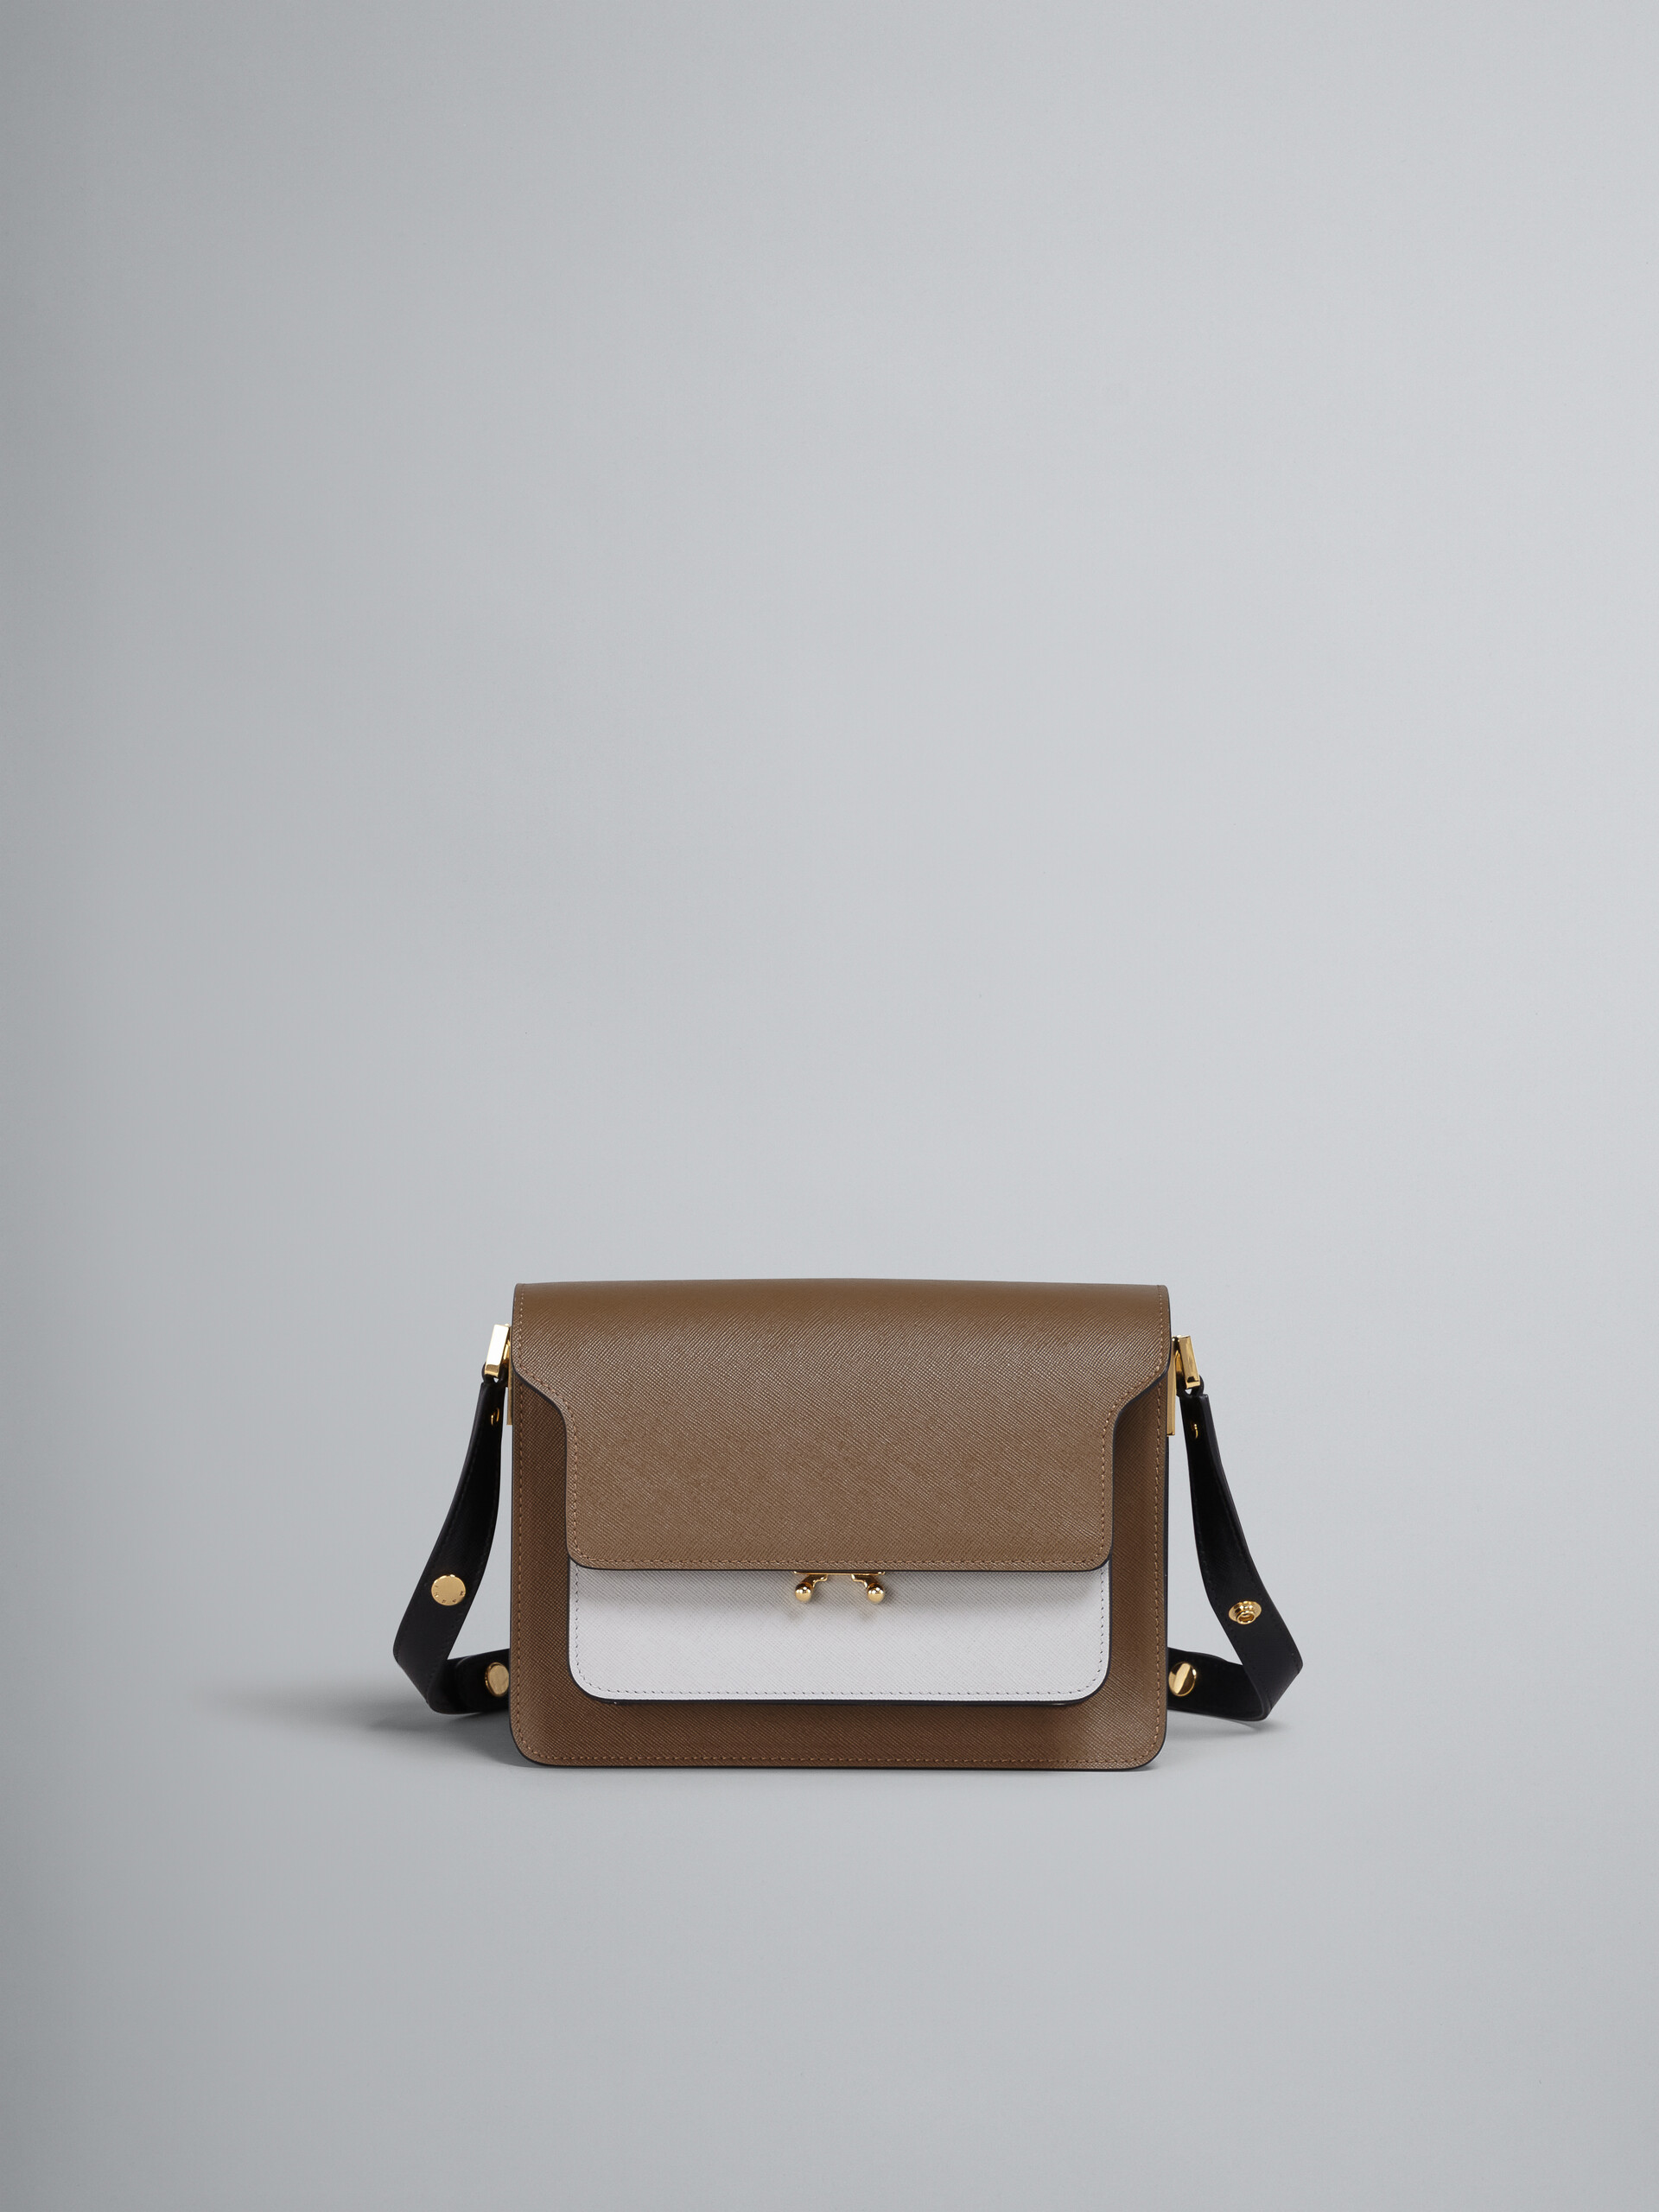 사피아노 브라운, 화이트 및 블랙 송아지 가죽 TRUNK 백 - Shoulder Bag - Image 1